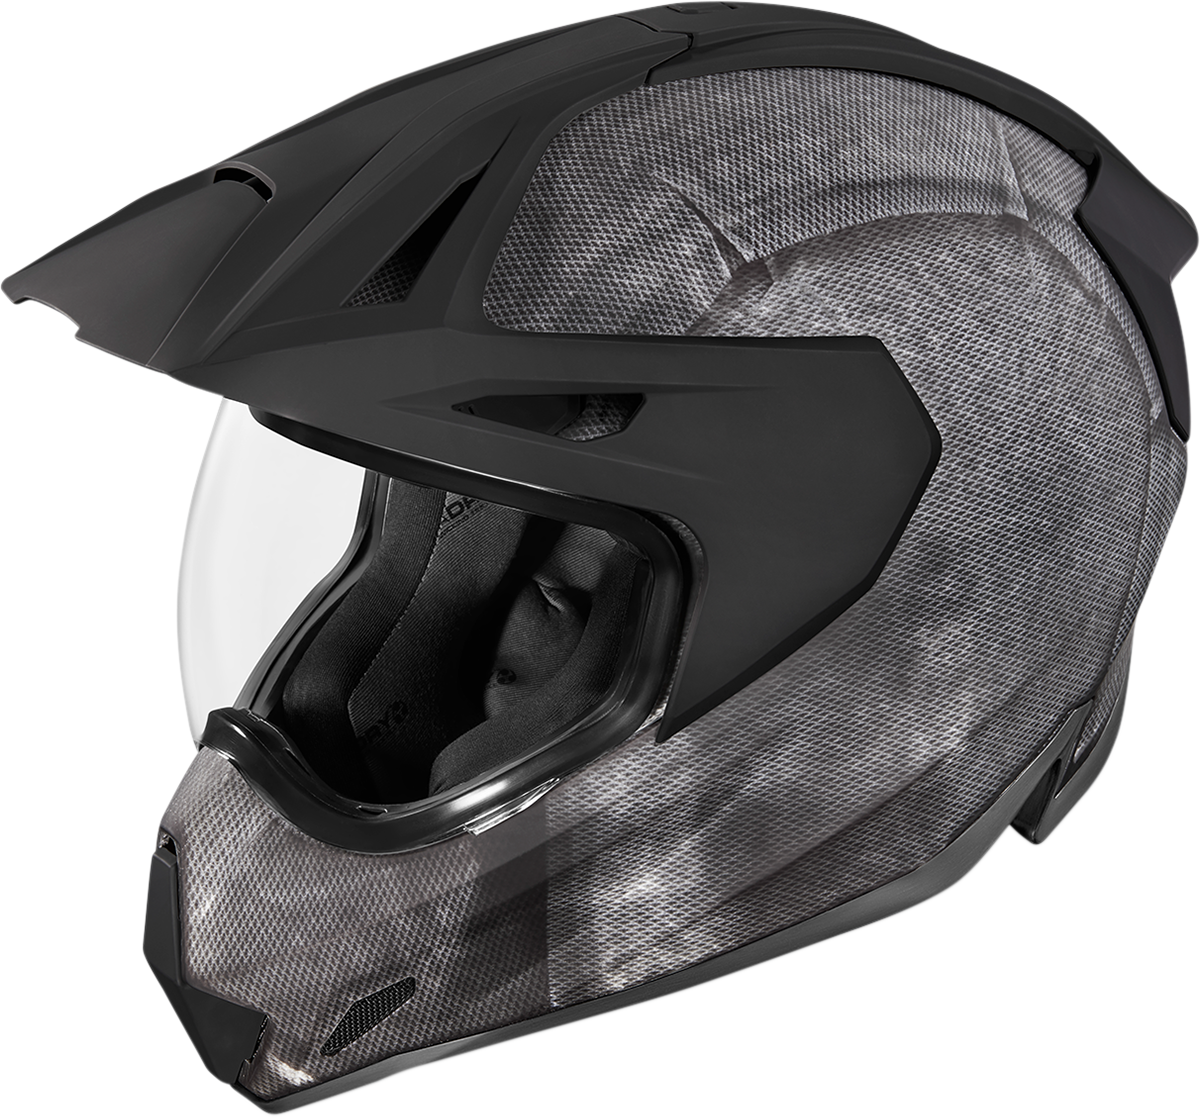 ICON Variant Pro™ Helmet - Construct - Black - XS 0101-12409